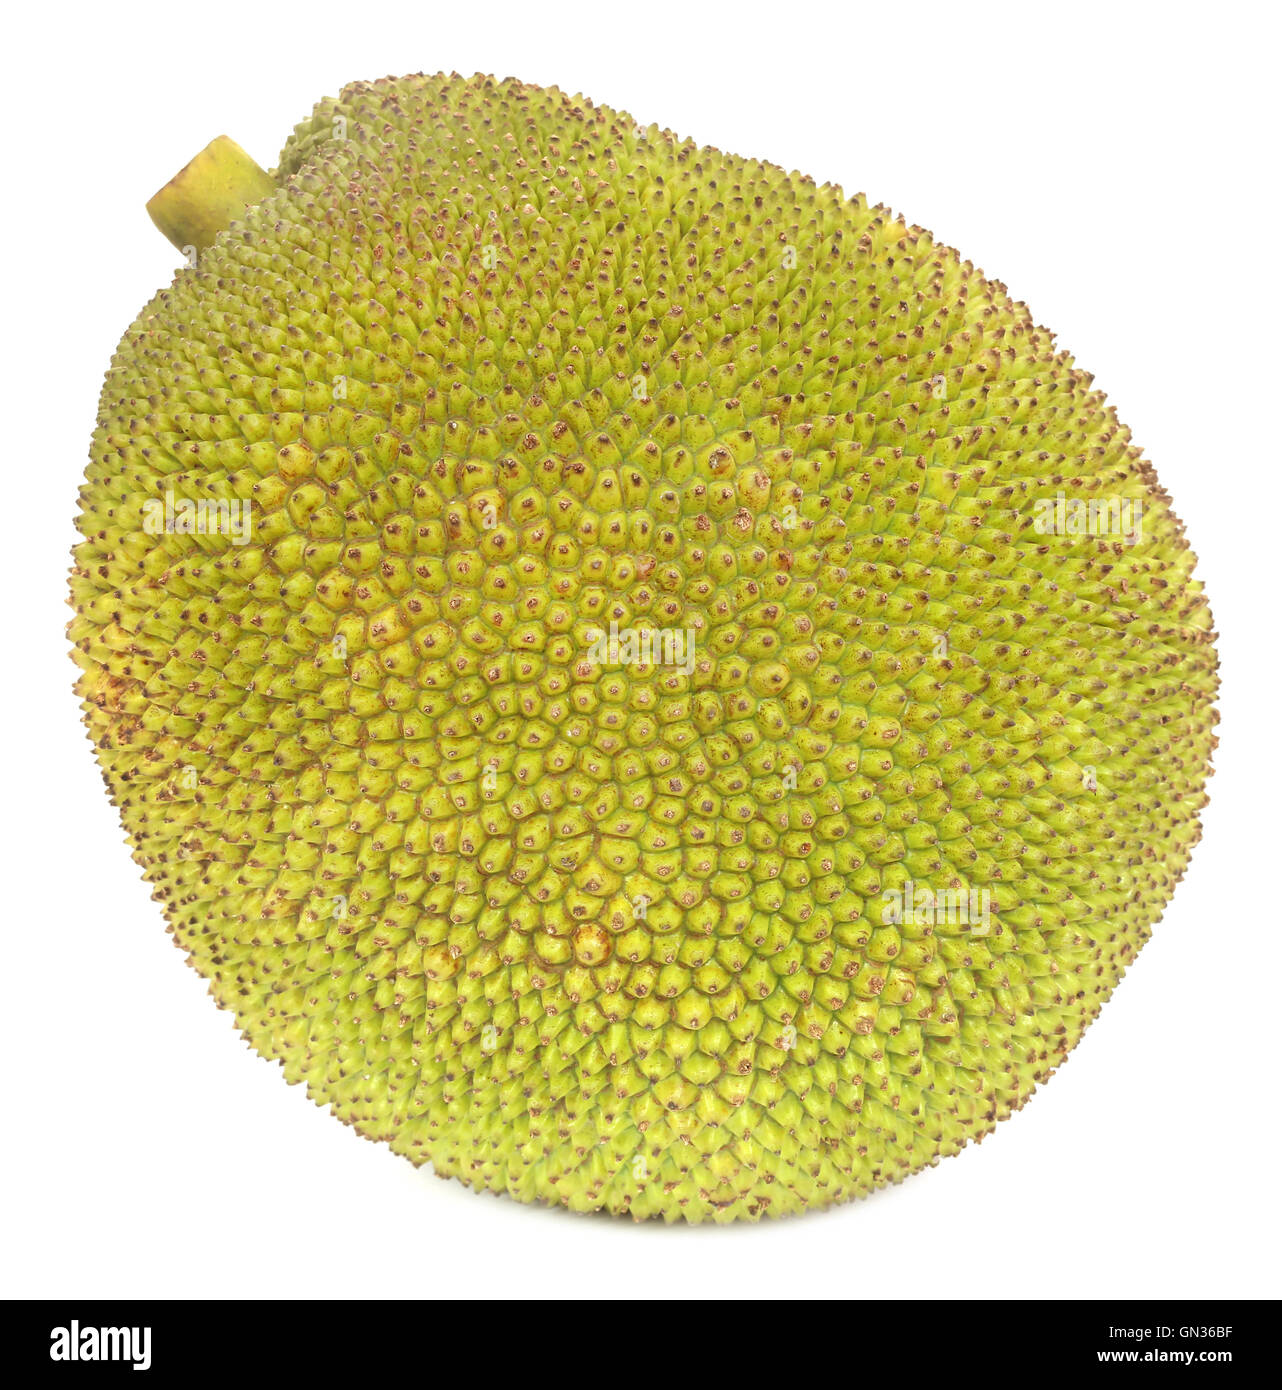 Jackfruit over white background Stock Photo